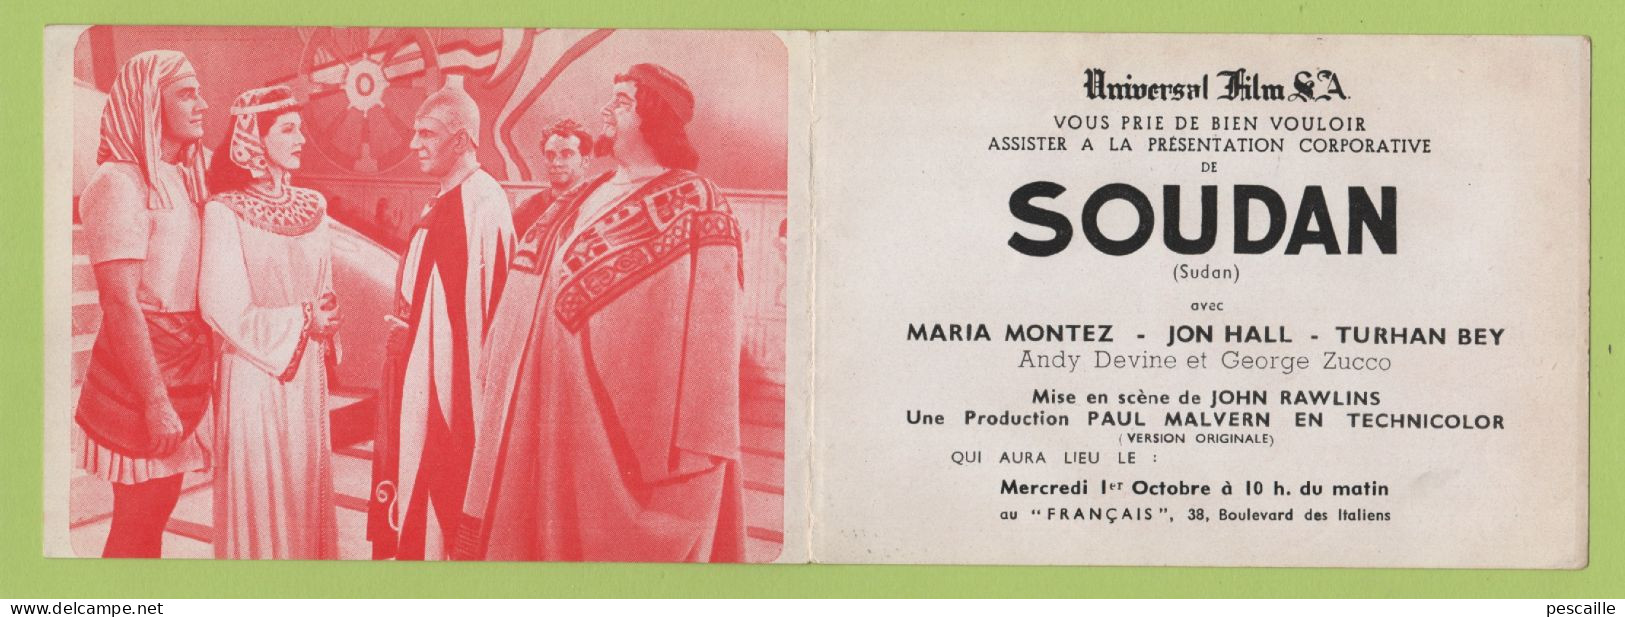 1945 ? - INVITATION UNIVERSAL FILM S.A. A LA PROJECTION DU FILM SOUDAN SUDAN AVEC MARIA MONTEZ JON HALL TURHAN BEY ... - Publicité Cinématographique